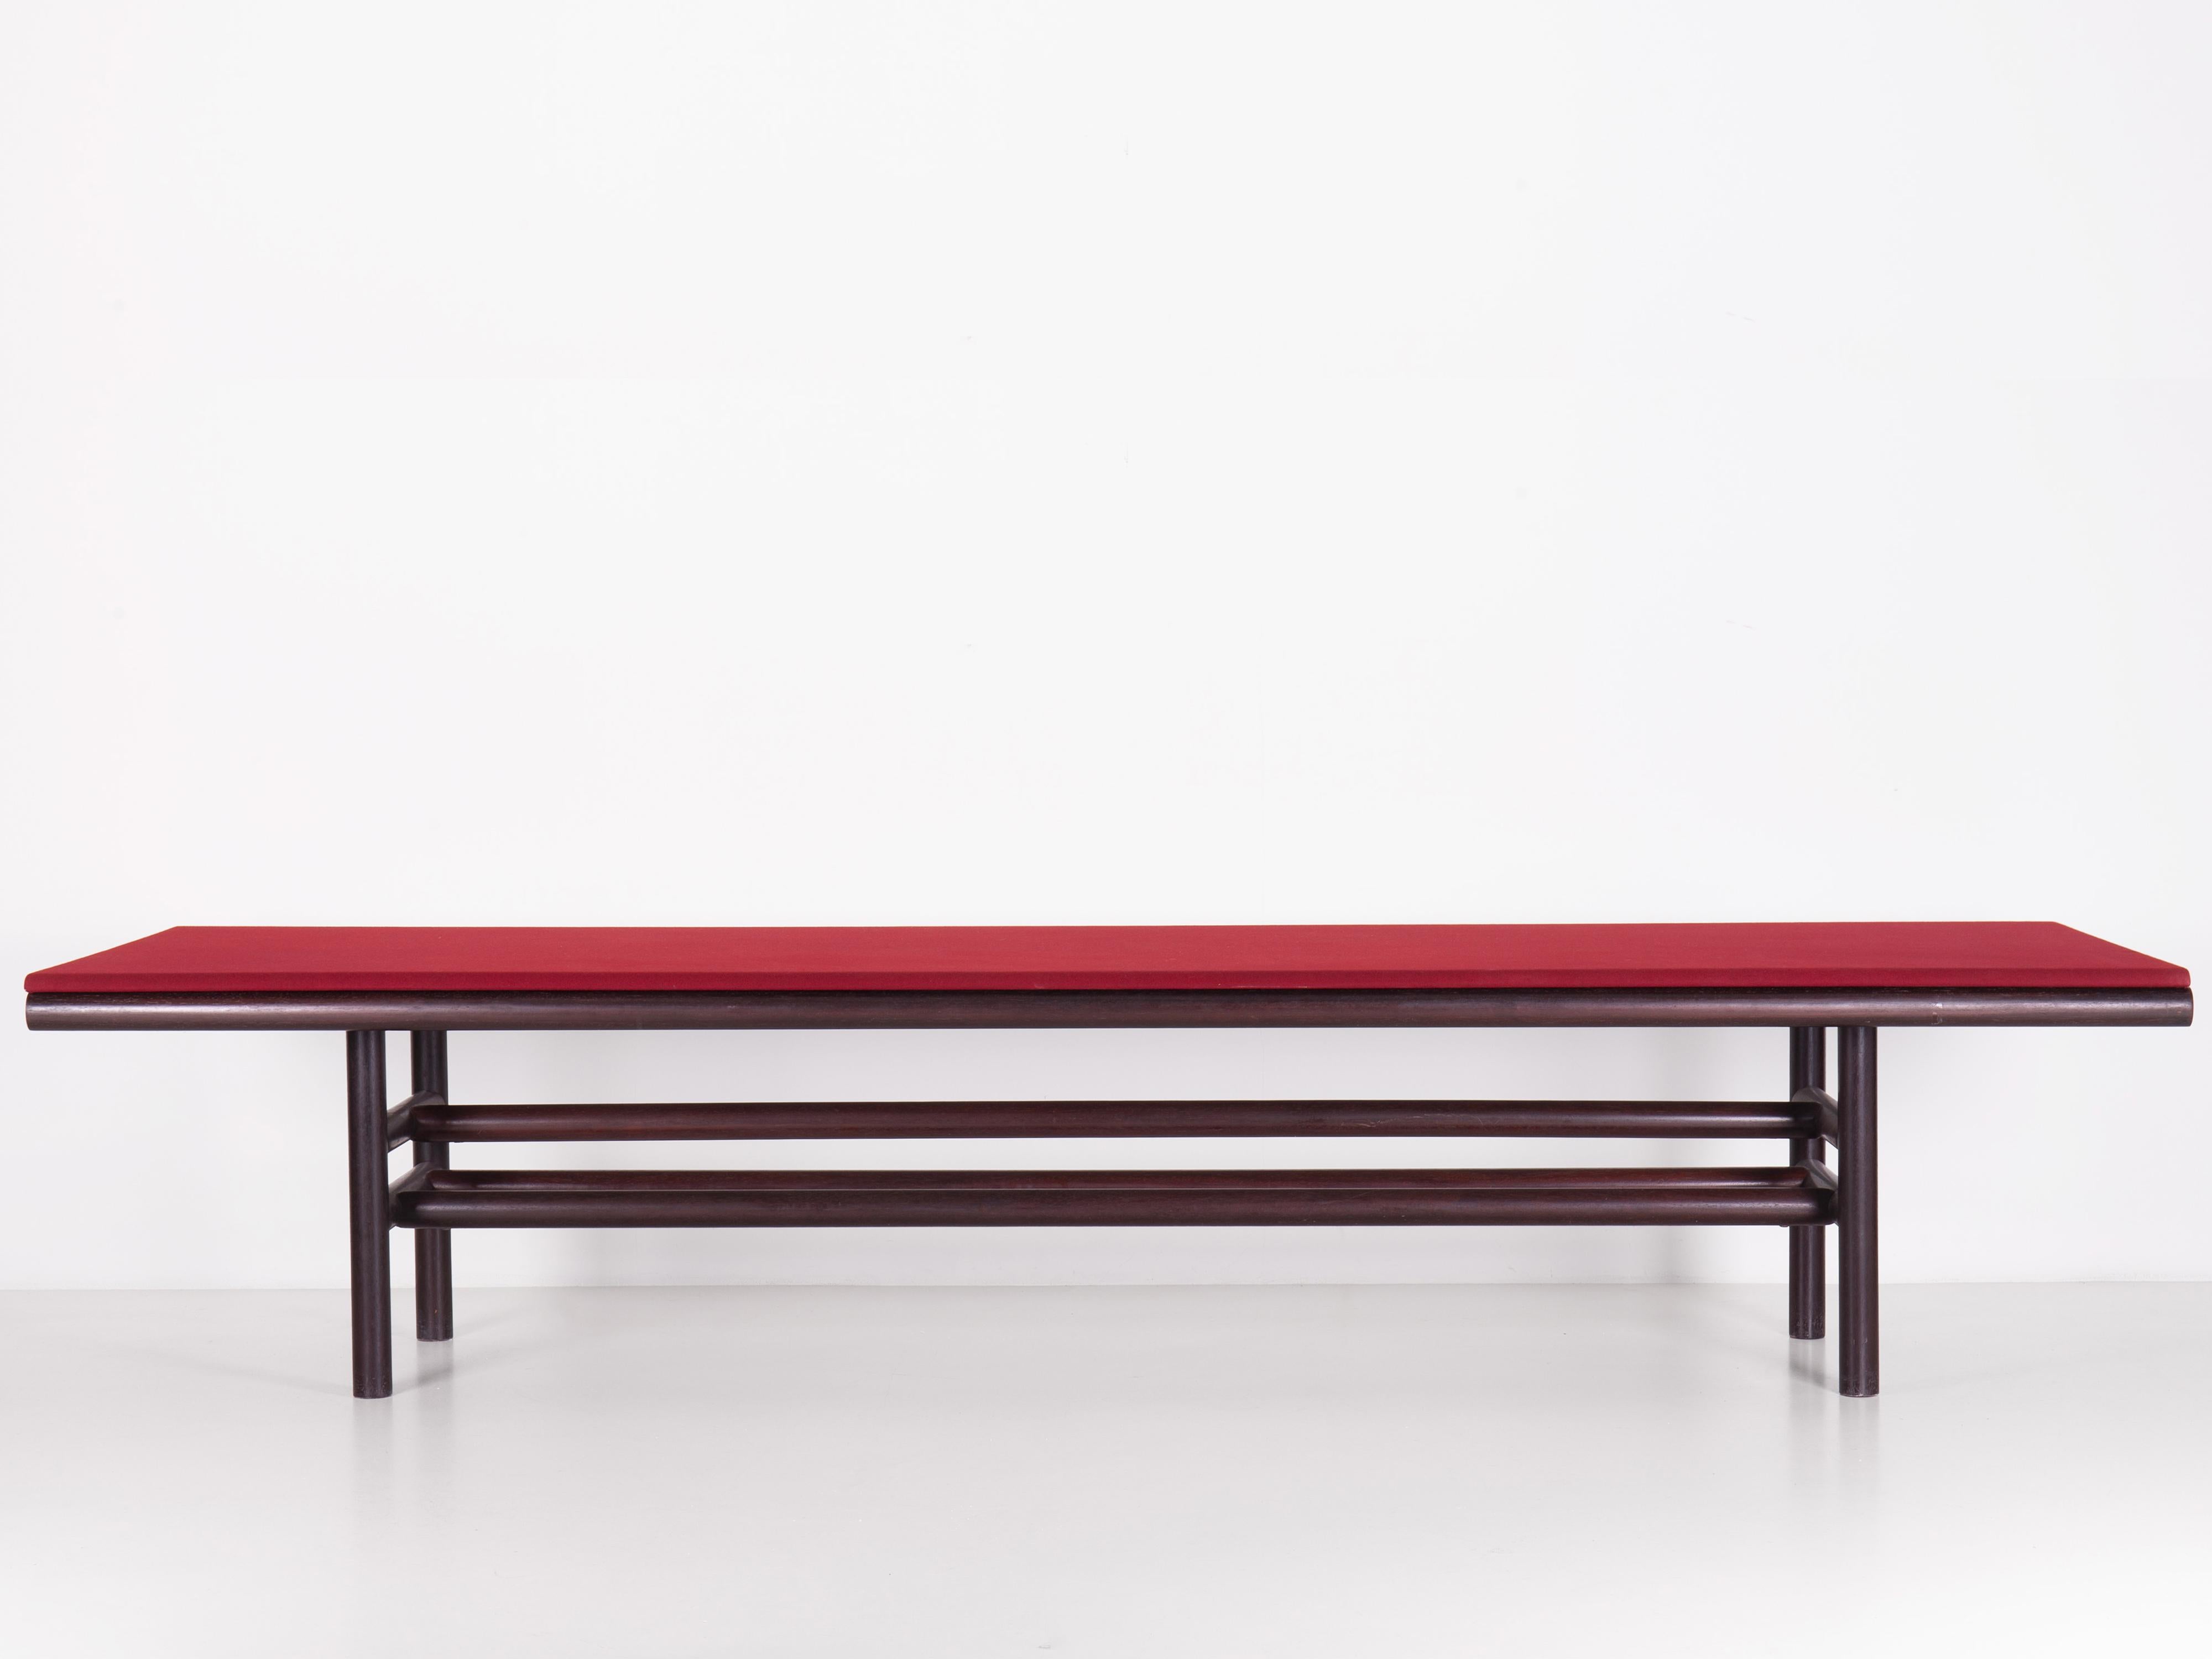 Table Gritti de Carlo Scarpa produite par Simon en 1976. 

Une grande table faite de cylindres en bois massif. Couverture supérieure en tissu d'origine.

Bibliographie :
Accademia delle Belle Arti di Brera, 